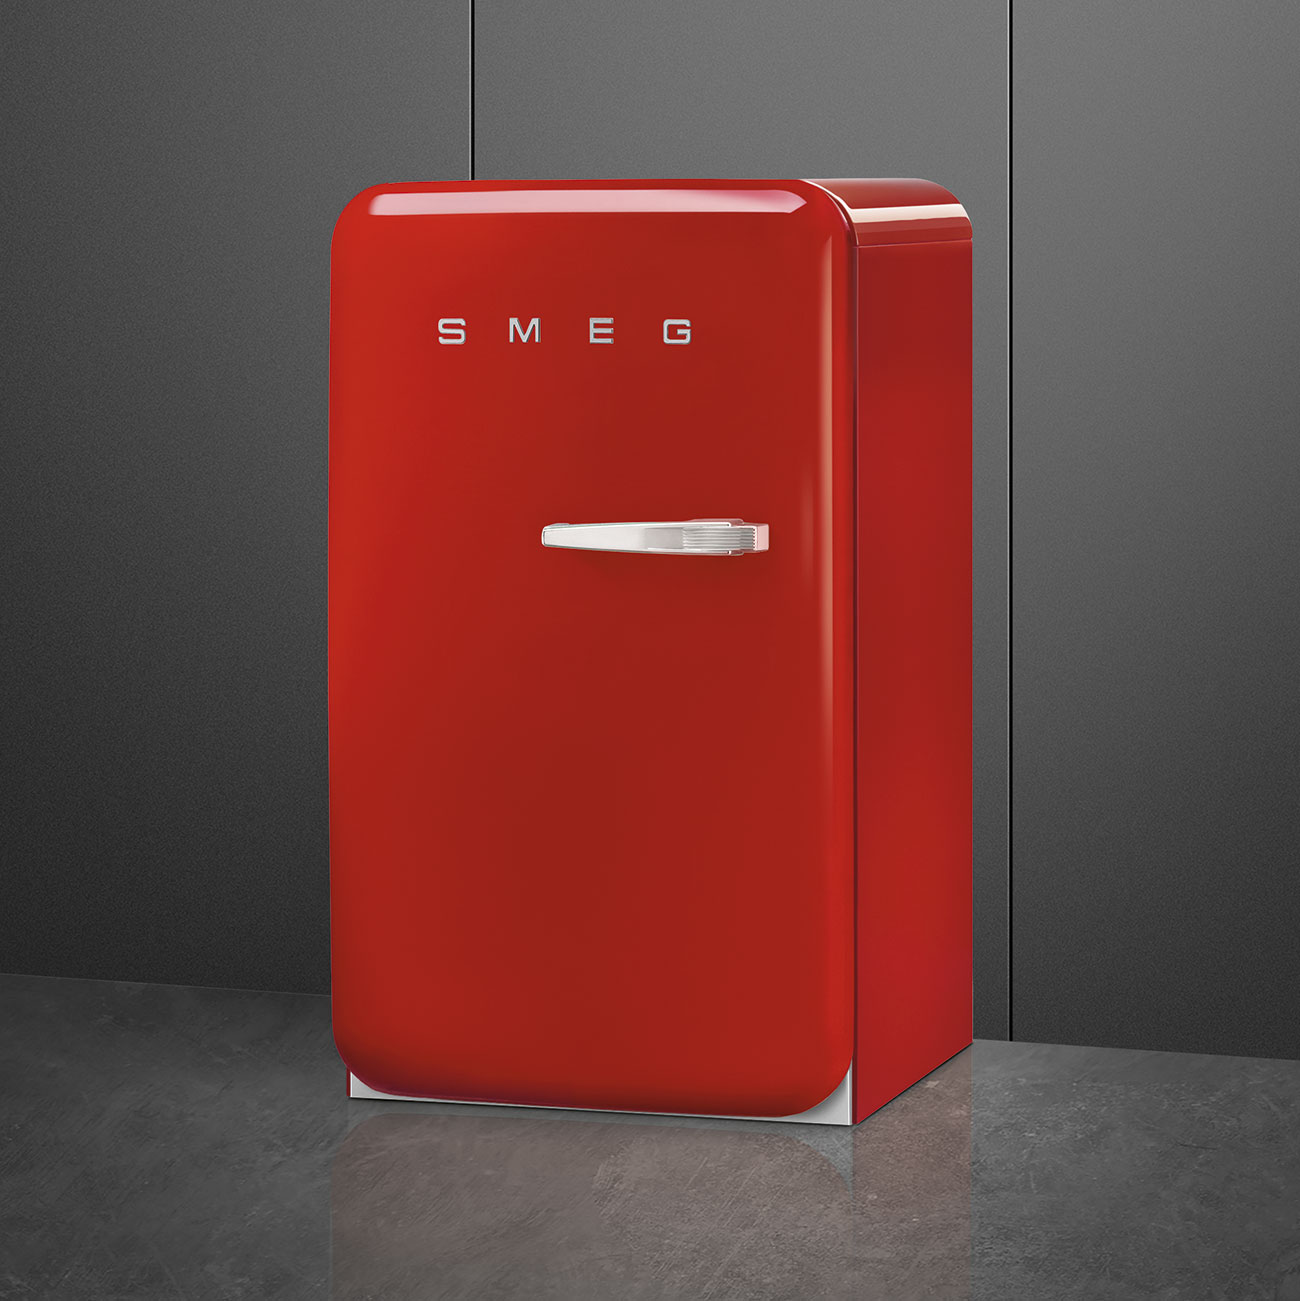 Red refrigerator - Smeg_4